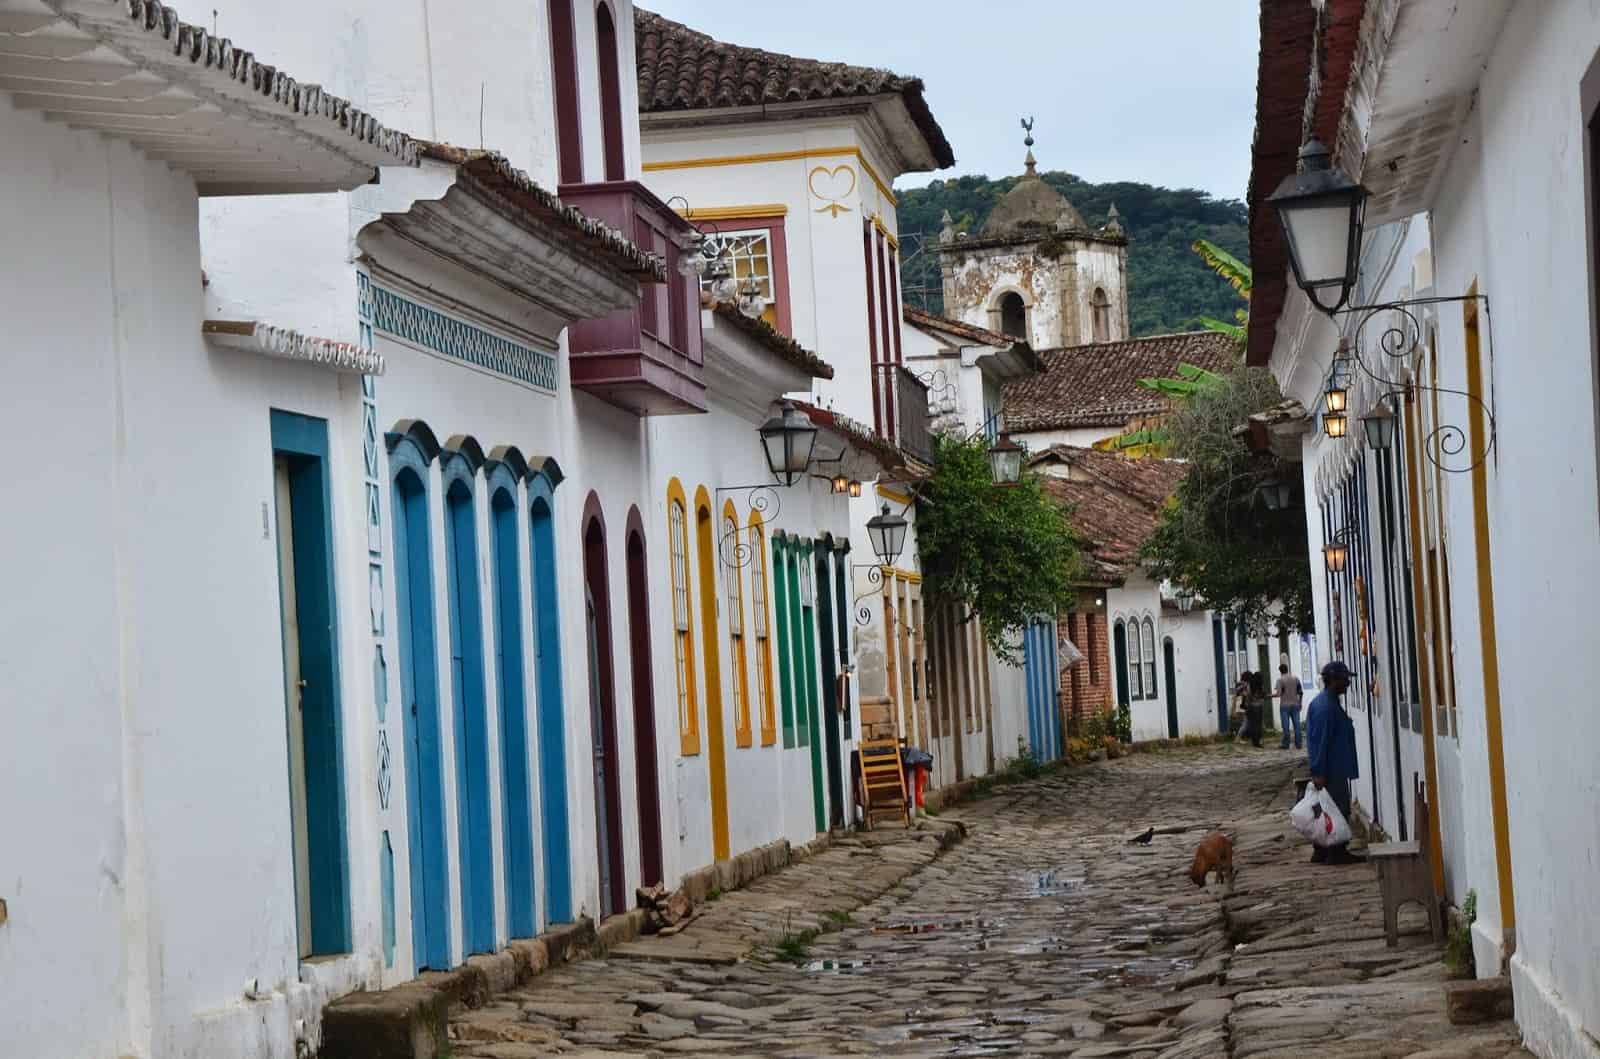 A street in Paraty, Brazil